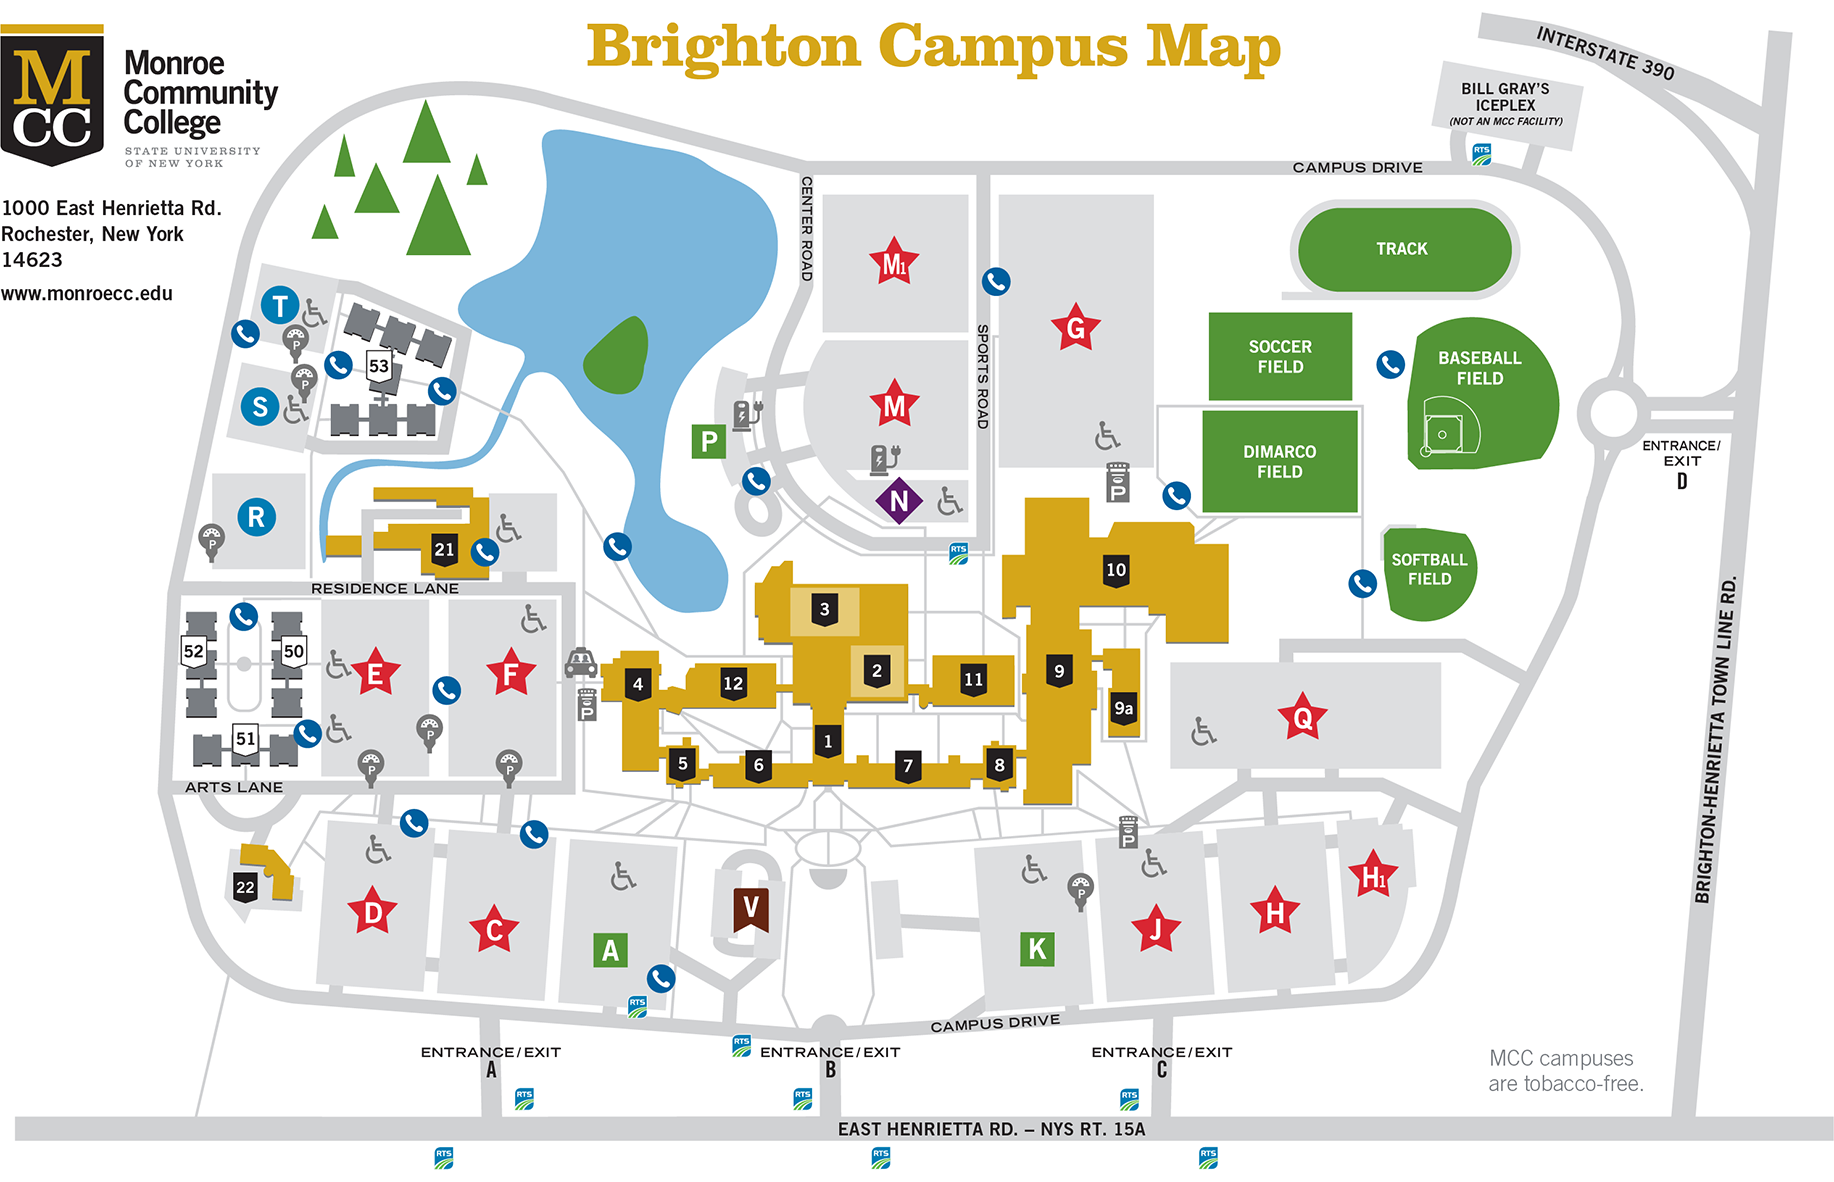 Illustrated map of MCC's Brighton Campus